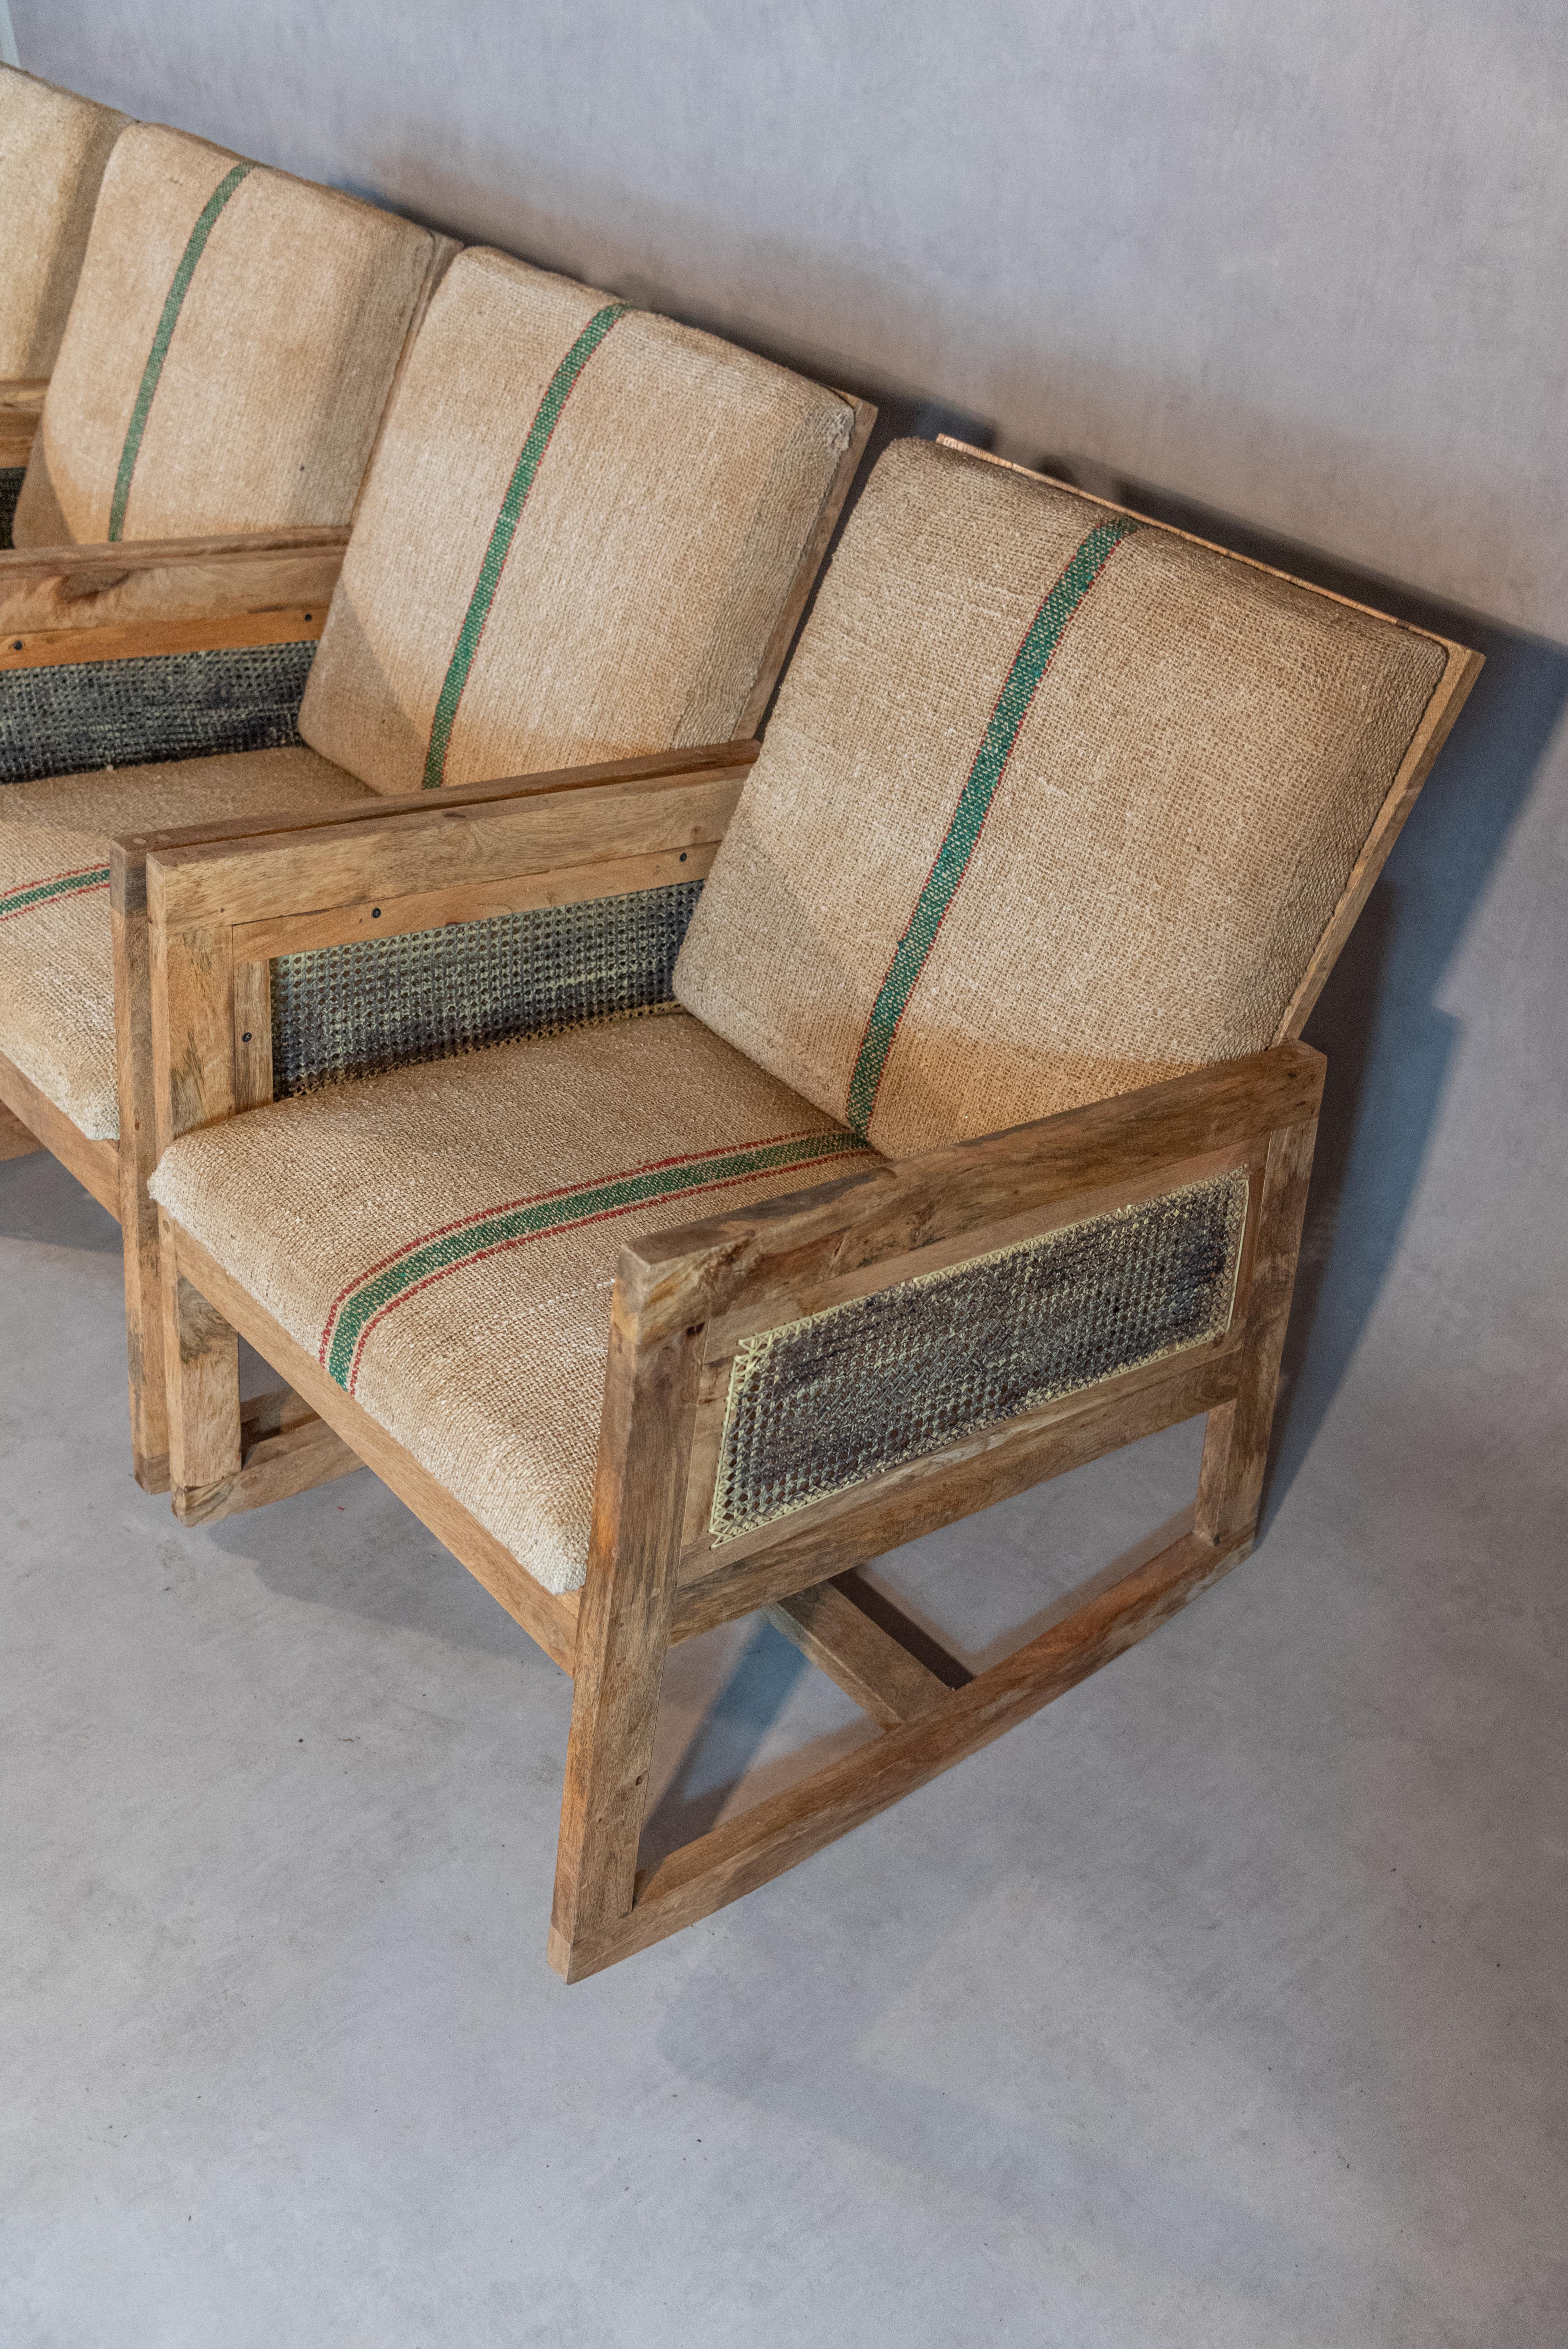 
Voici un charmant ensemble de quatre fauteuils à bascule français, tous délicieusement fabriqués en riche bois d'acajou. Ces chaises sont d'une élégance intemporelle, alliant le charme rustique à la sophistication classique.

L'assise et le dossier